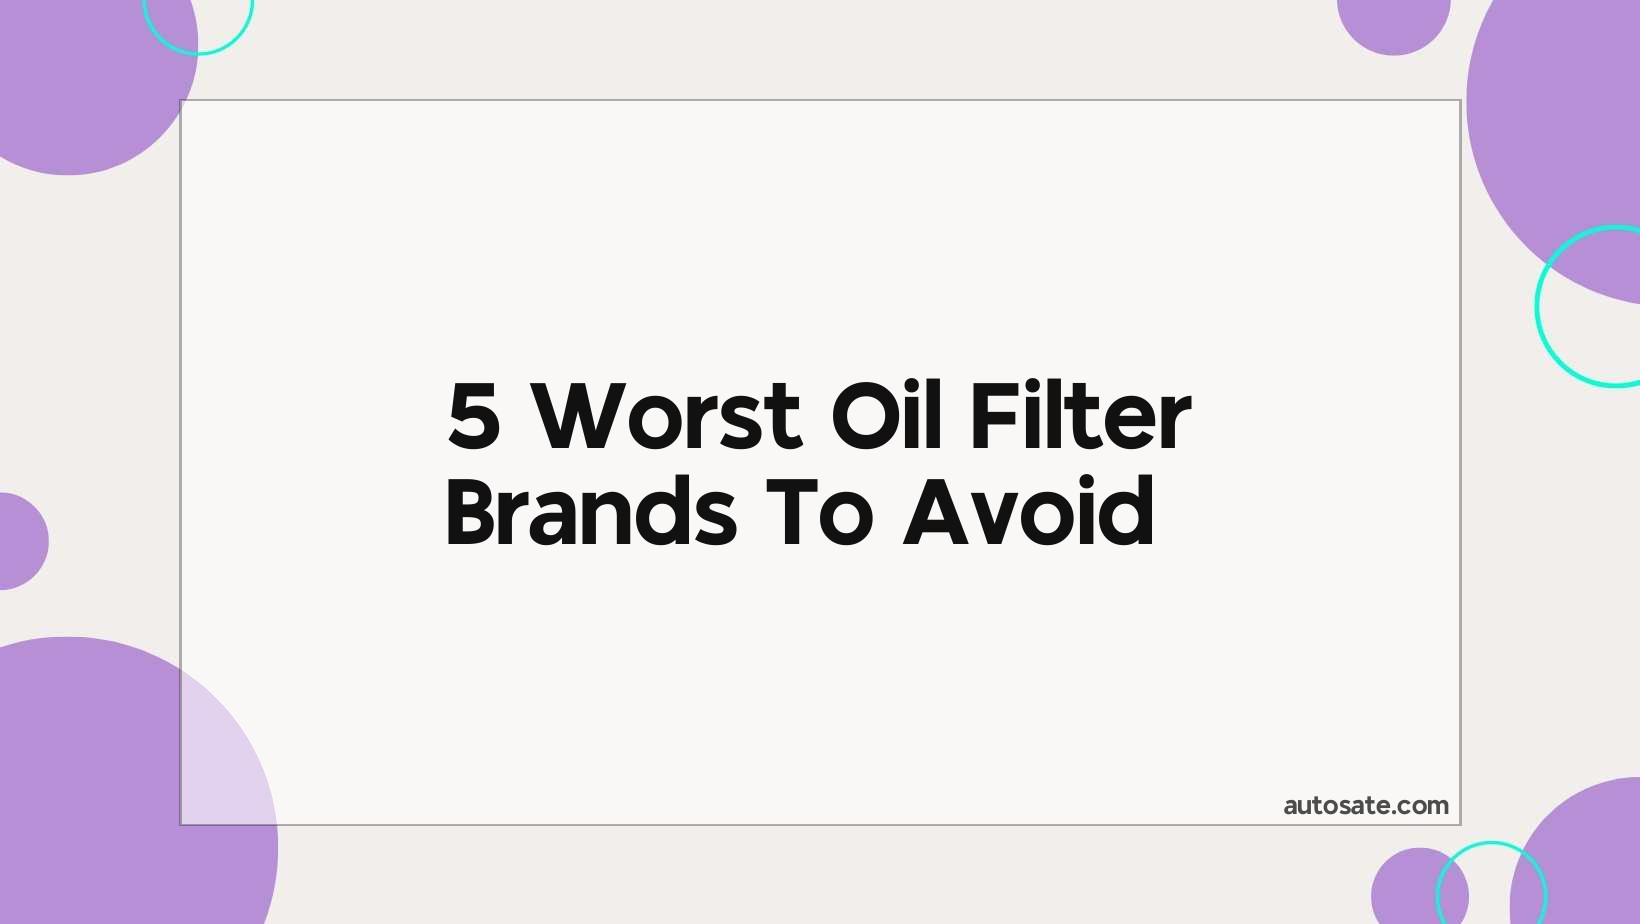 5 Worst Oil Filter Brands To Avoid